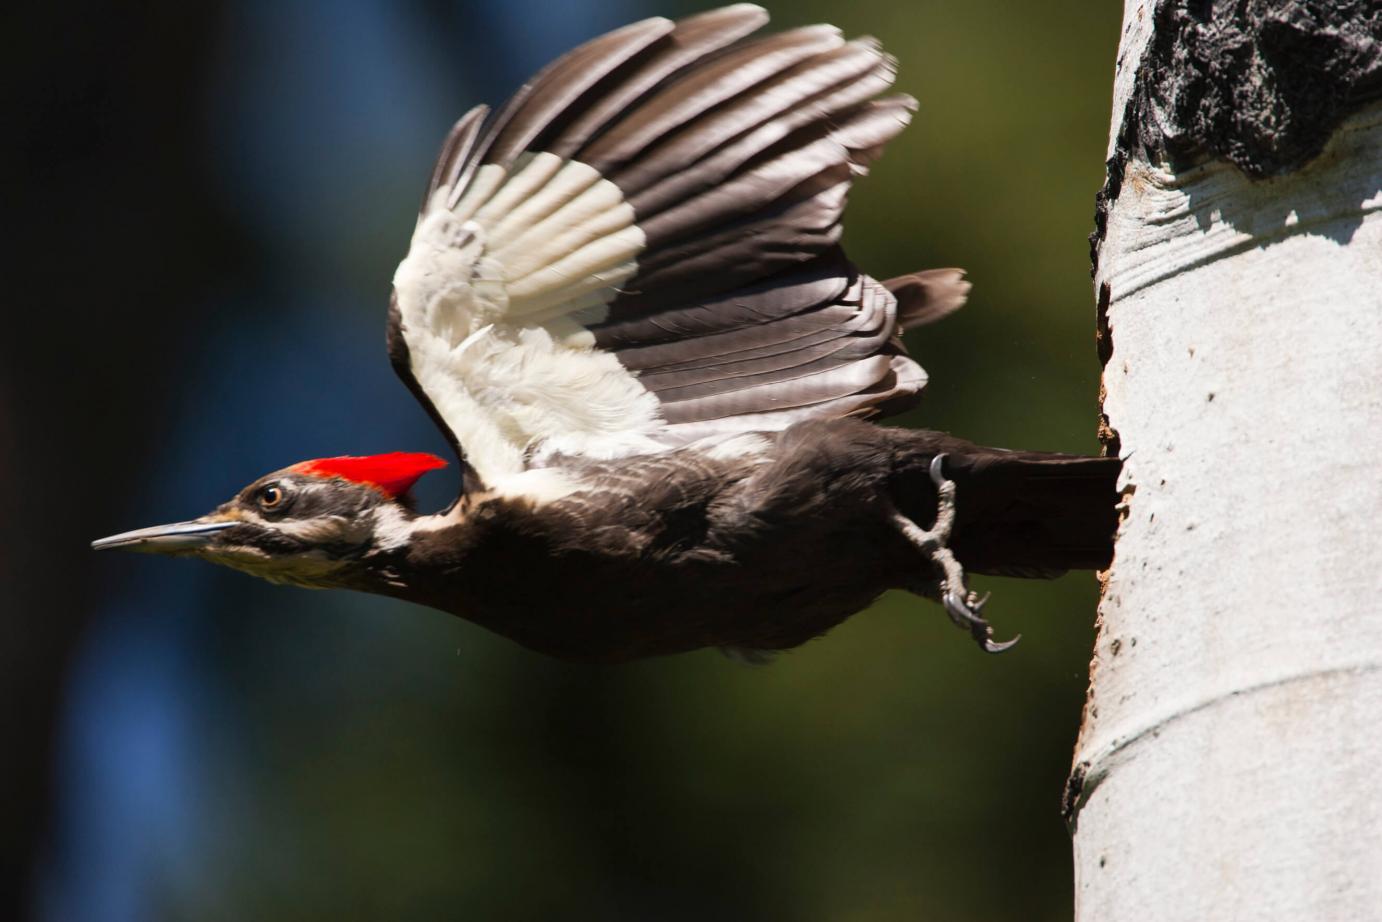 a woodpecker takes off in flight